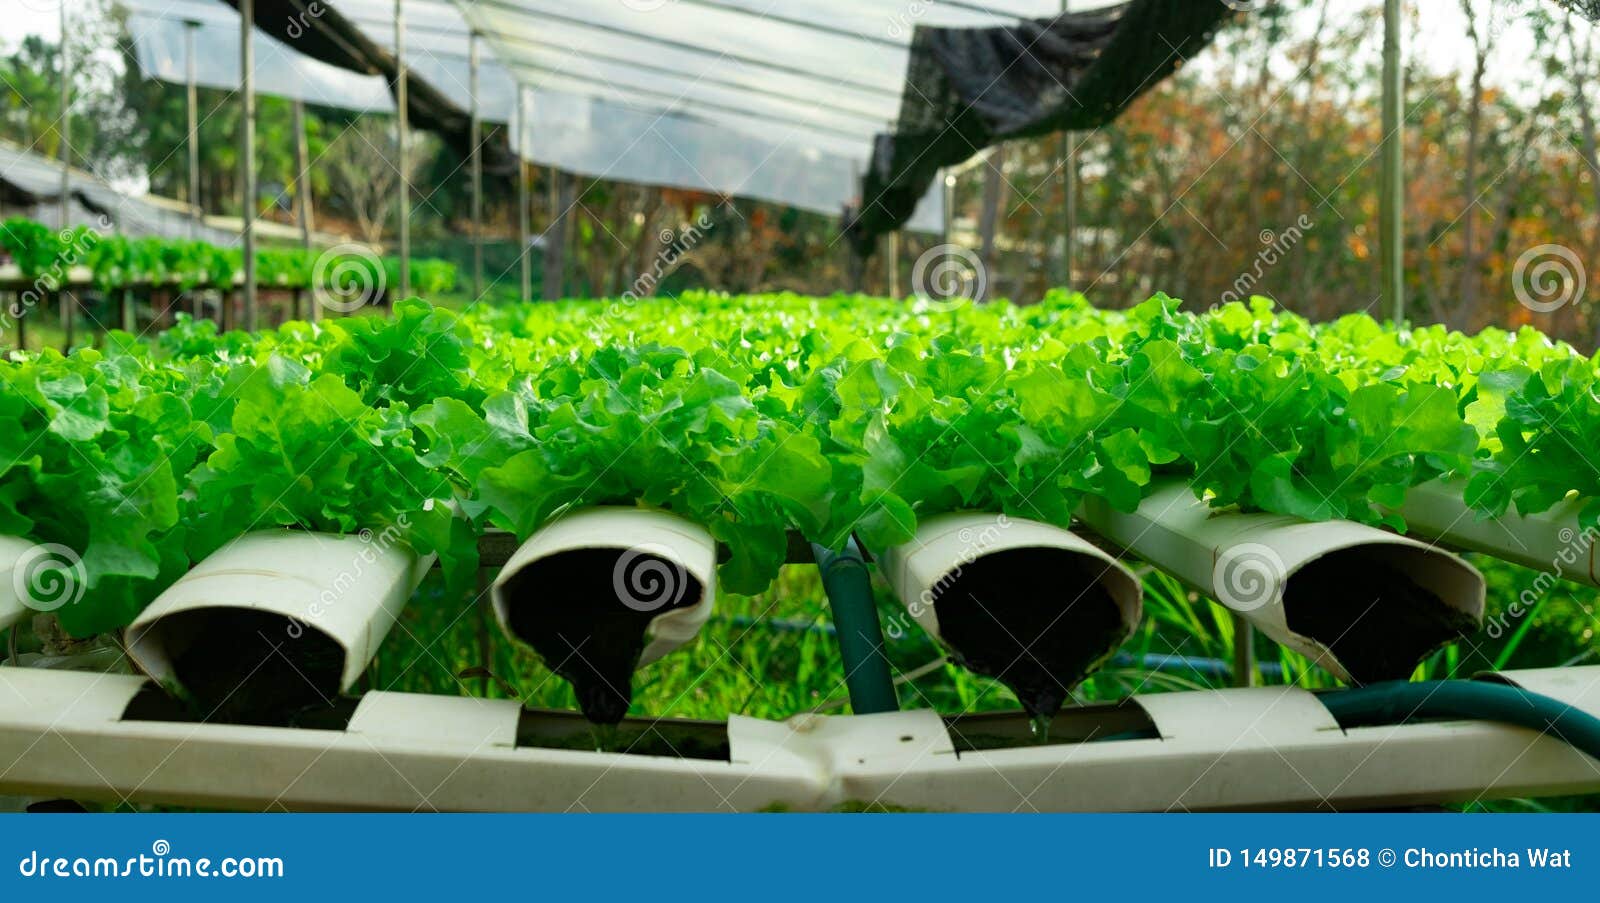 生长在种植剧情的水耕的系统流图水和肥料自动化的菜绿色橡木库存照片 图片包括有生长在种植剧情的水耕的系统流图水和肥料自动化的菜绿色橡木